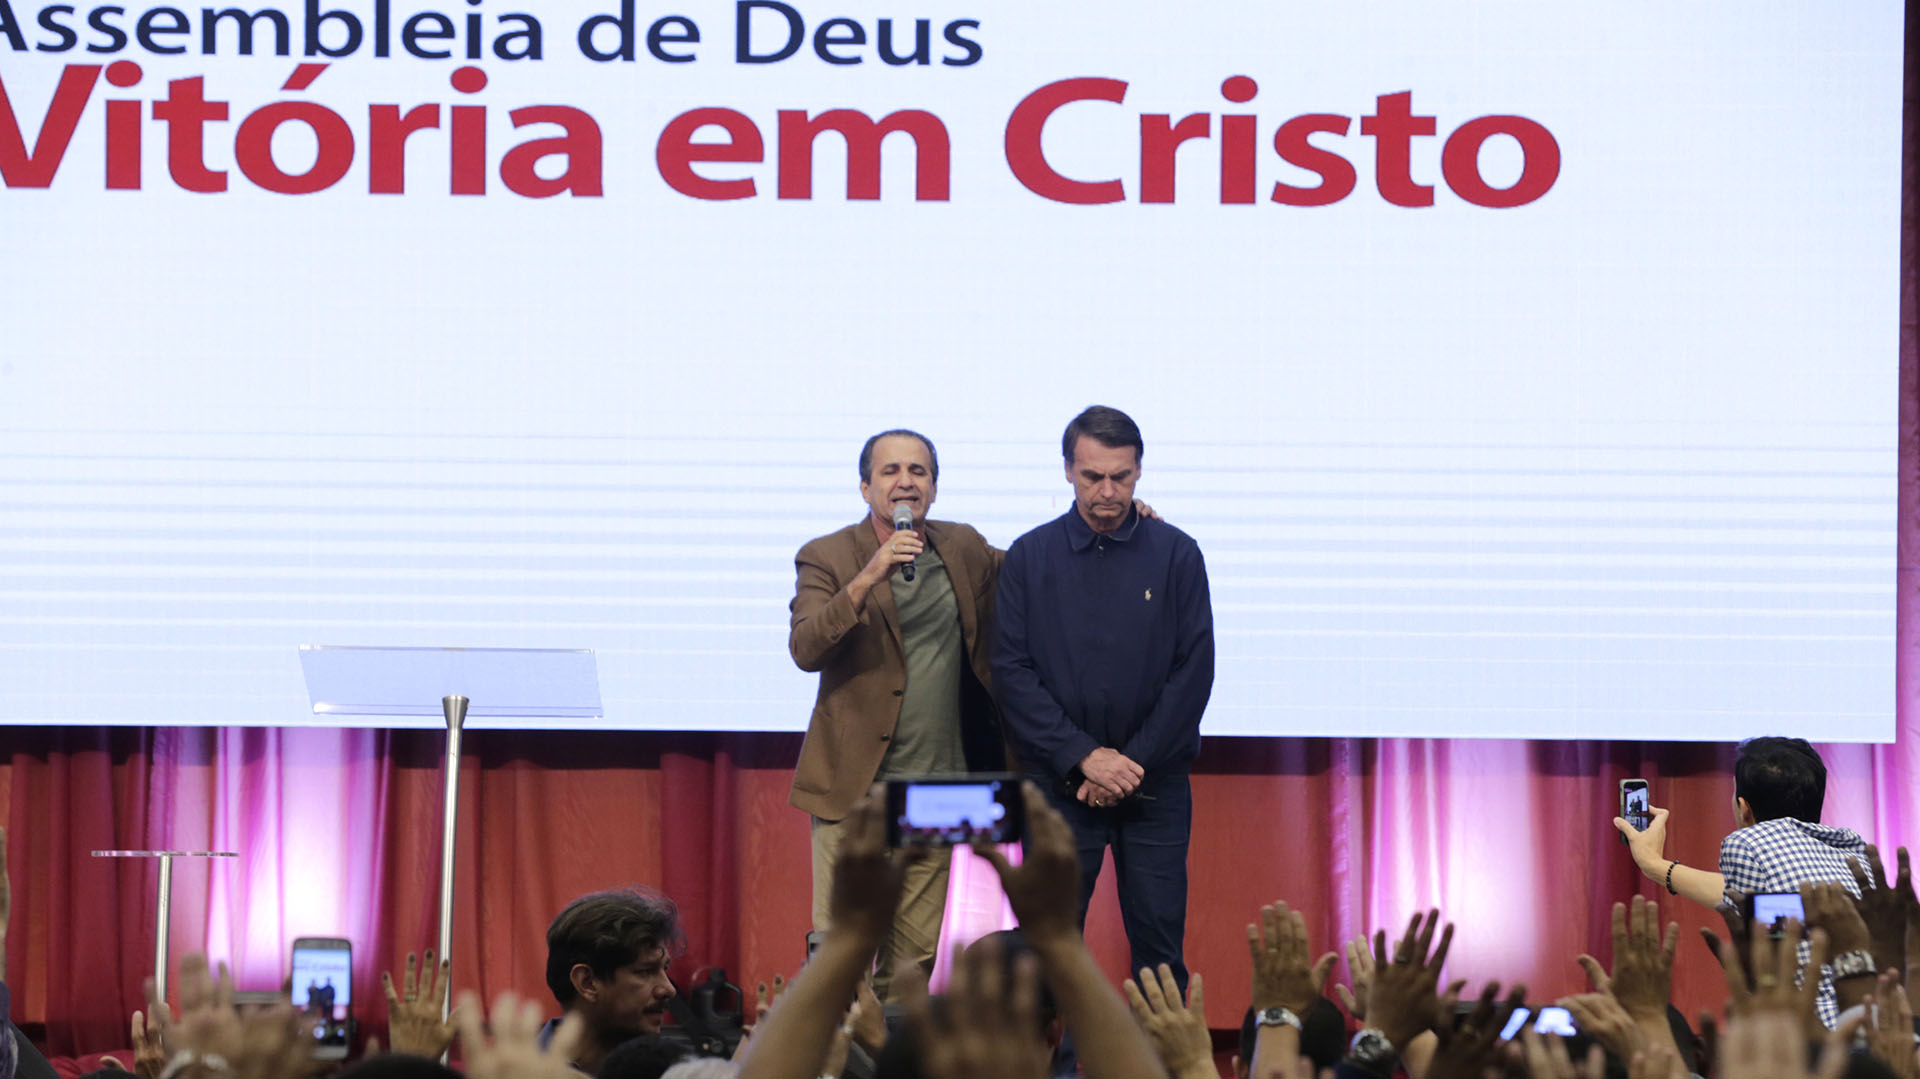 Jair Bolsonaro con el pastor evangélico Silas Malafaia durante un culto en la iglesia evangélica Assembleia de Deus Vitória em Cristo, en Río de Janeiro (EFE)